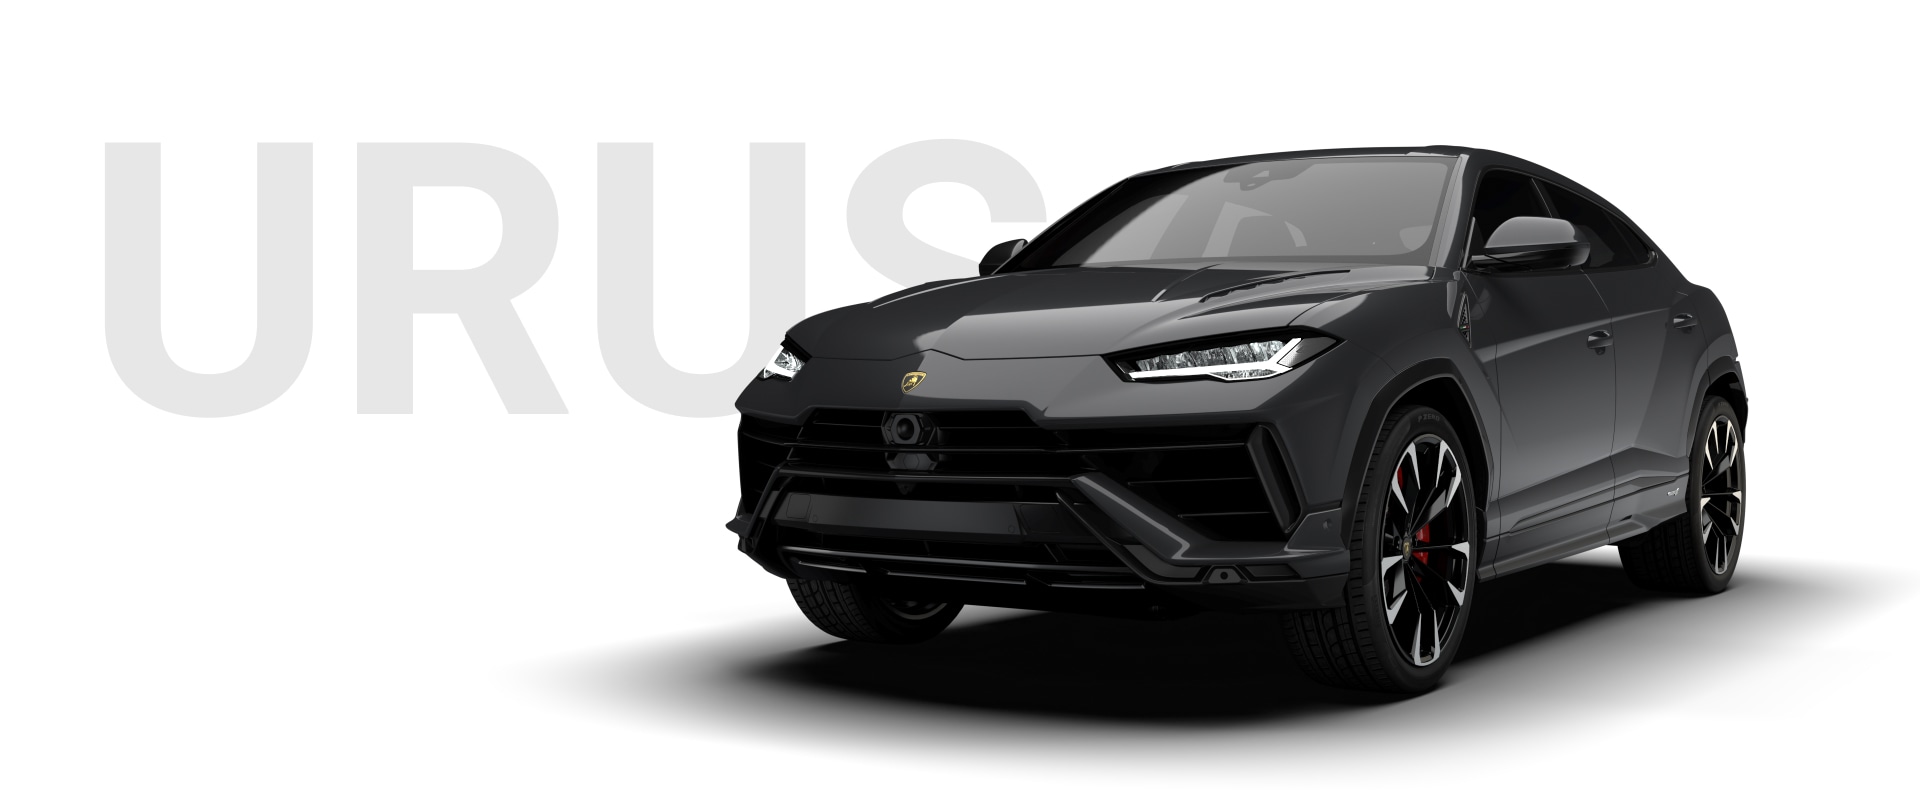 Lamborghini Urus- Technical Specifications, Pictures, Videos